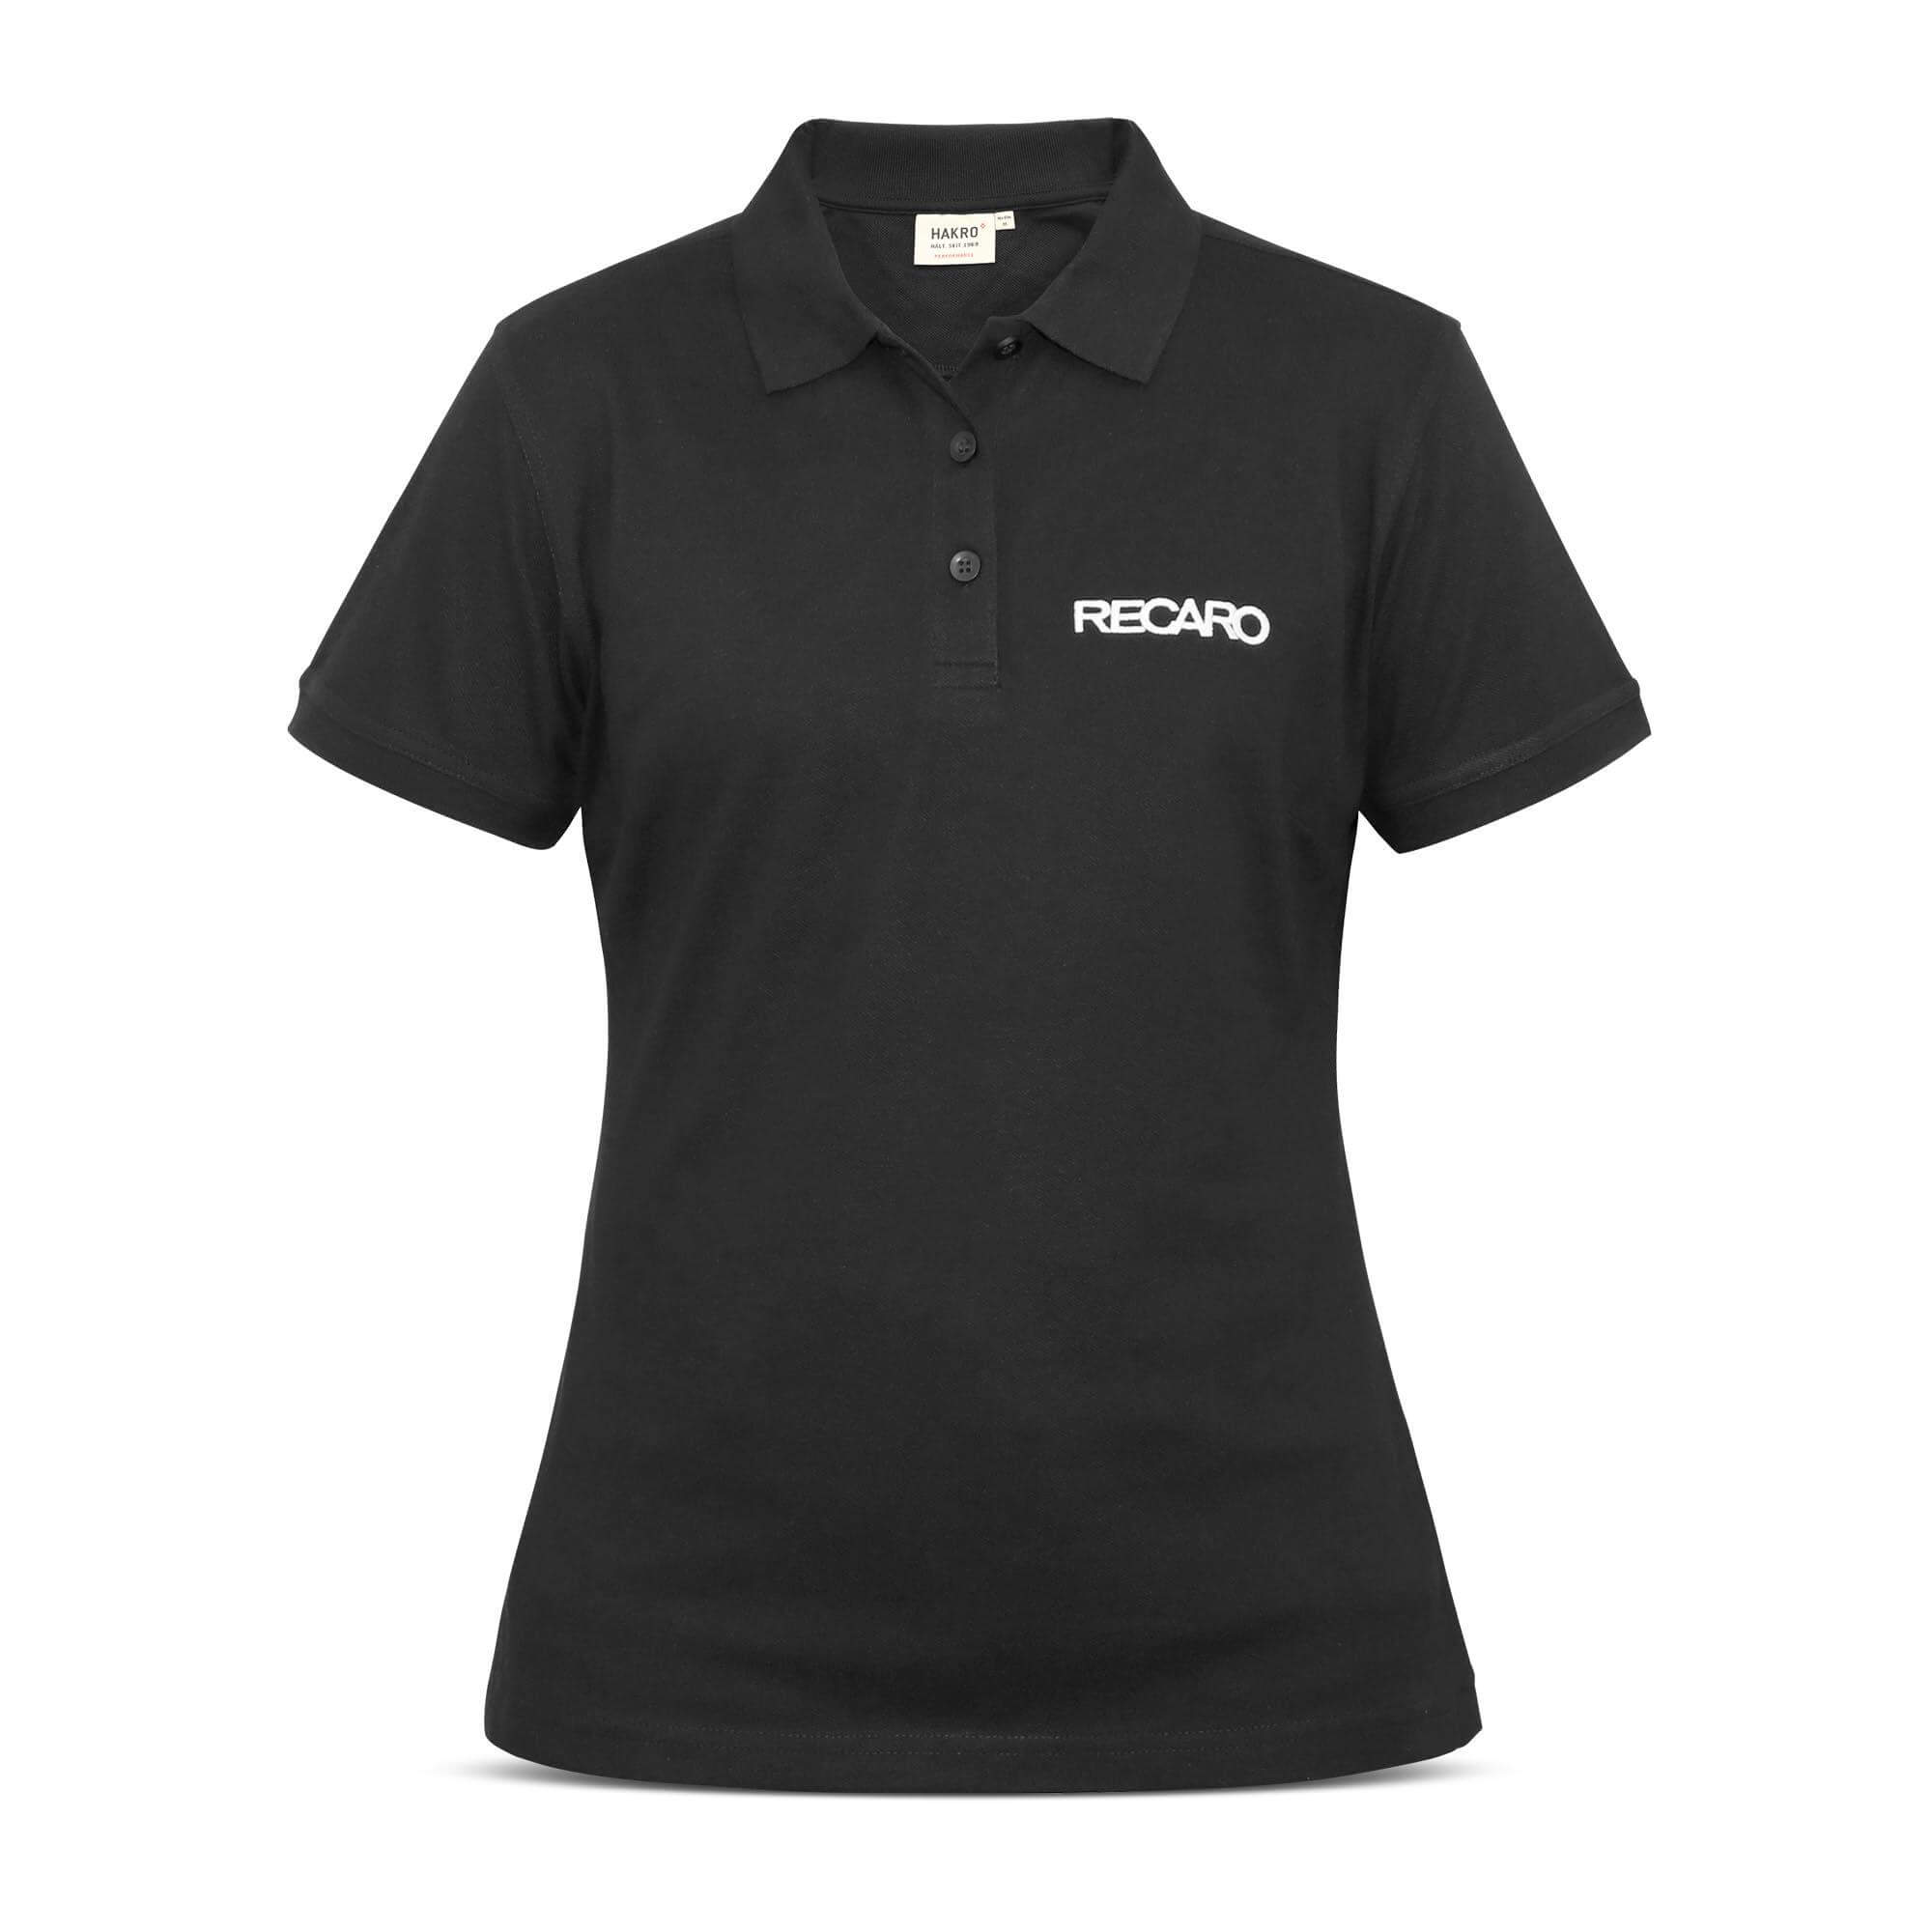 RECARO 21000379 Polo shirt ladies, size XXL Photo-0 